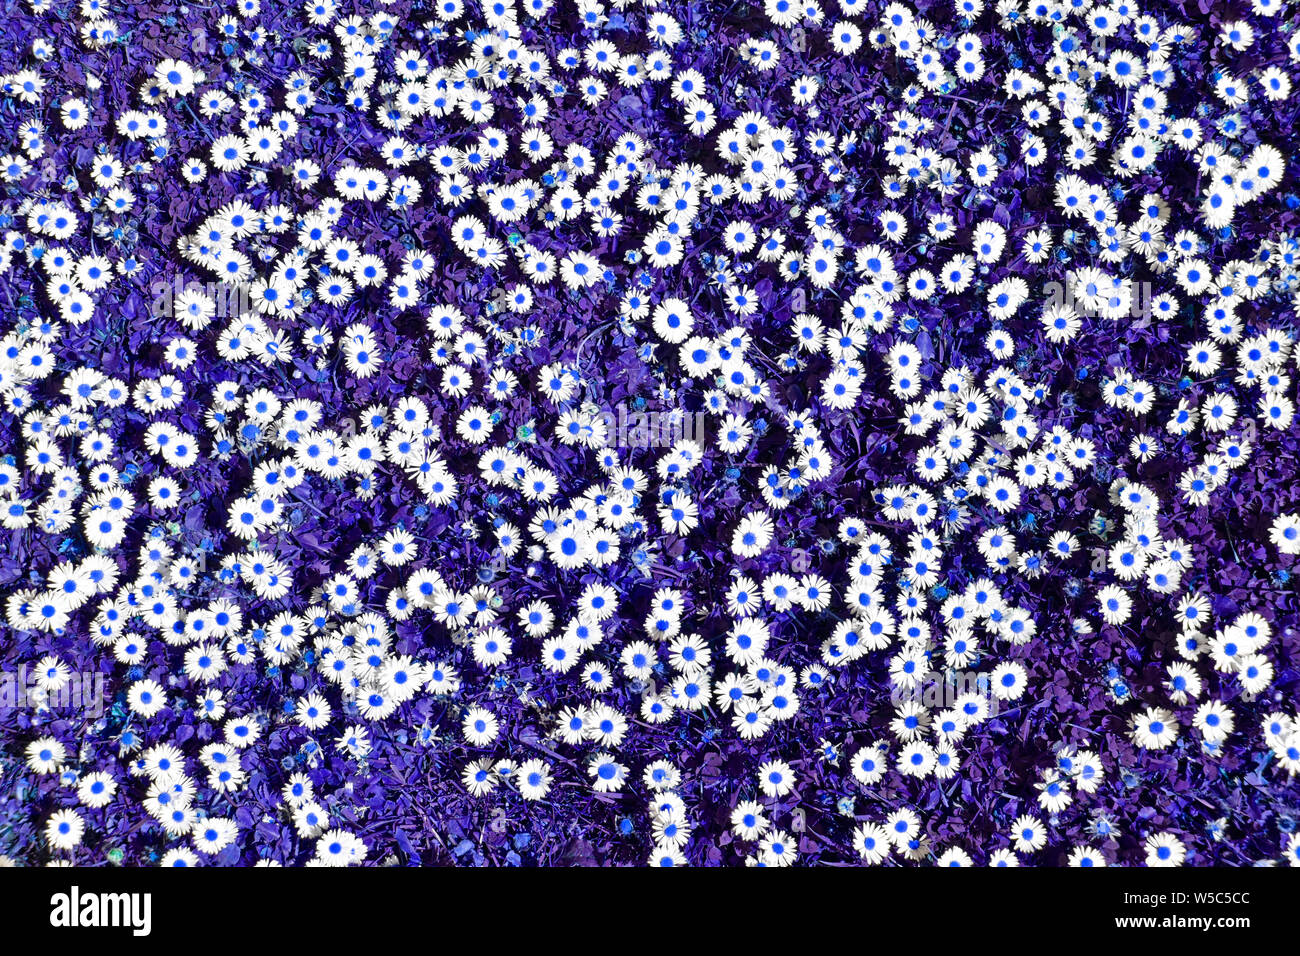 Abstract background Image durch künstliche Farbe Manipulation eines Patches von Daises in eine Wiese mit weissen daisy flowers Köpfe Blue Dots & Gras UK erstellt Stockfoto